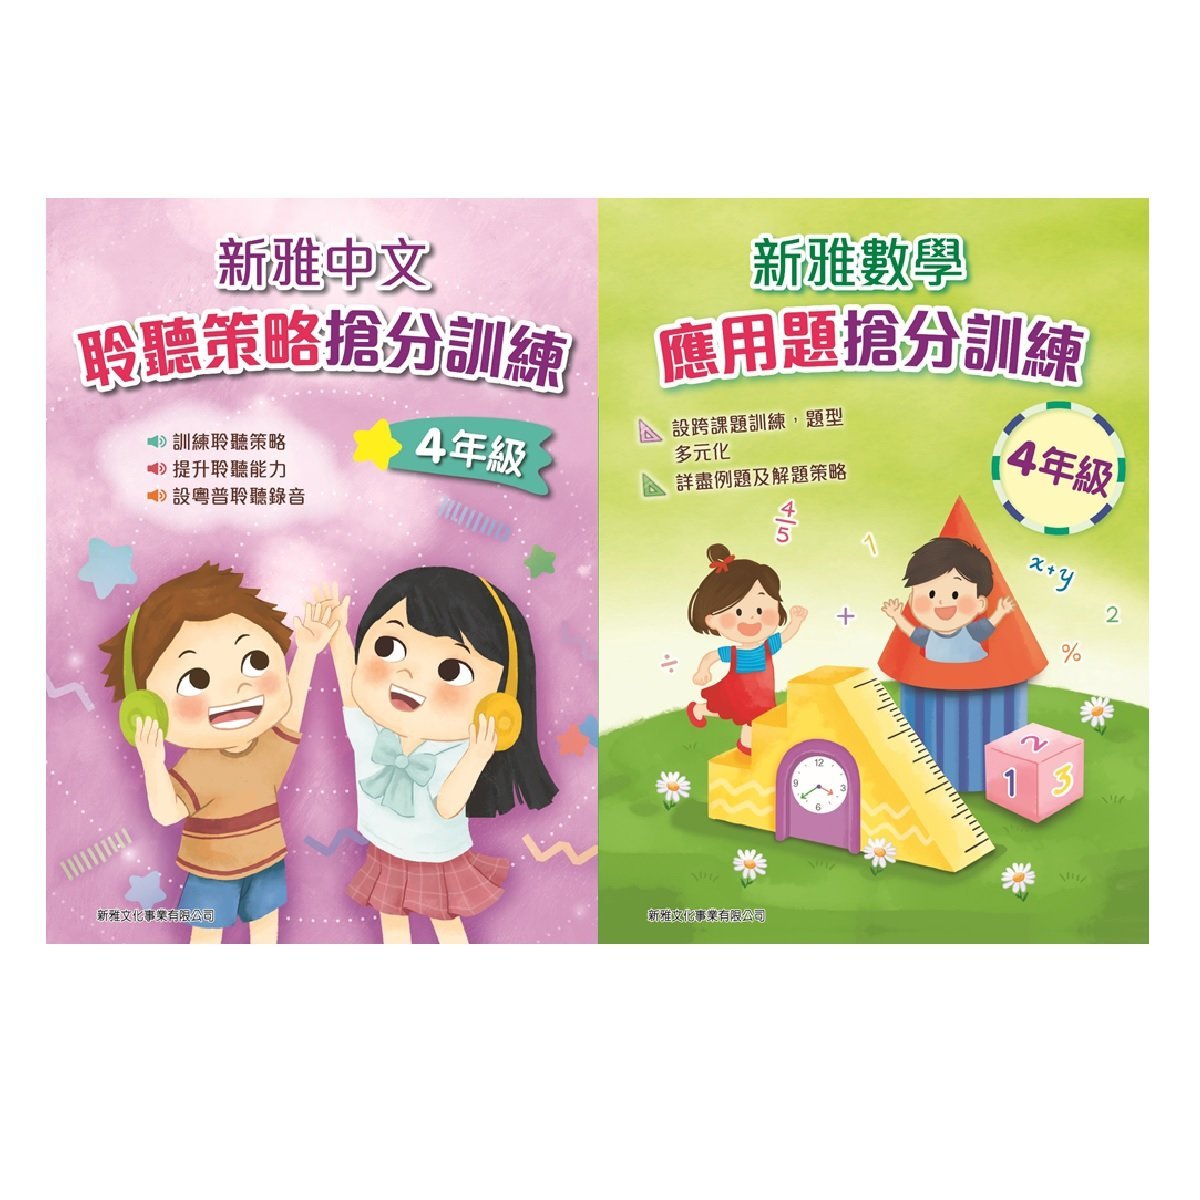 新雅中文聆聽策略搶分訓練、新雅數學應用題搶分訓練 (4年級)  (一套2冊)